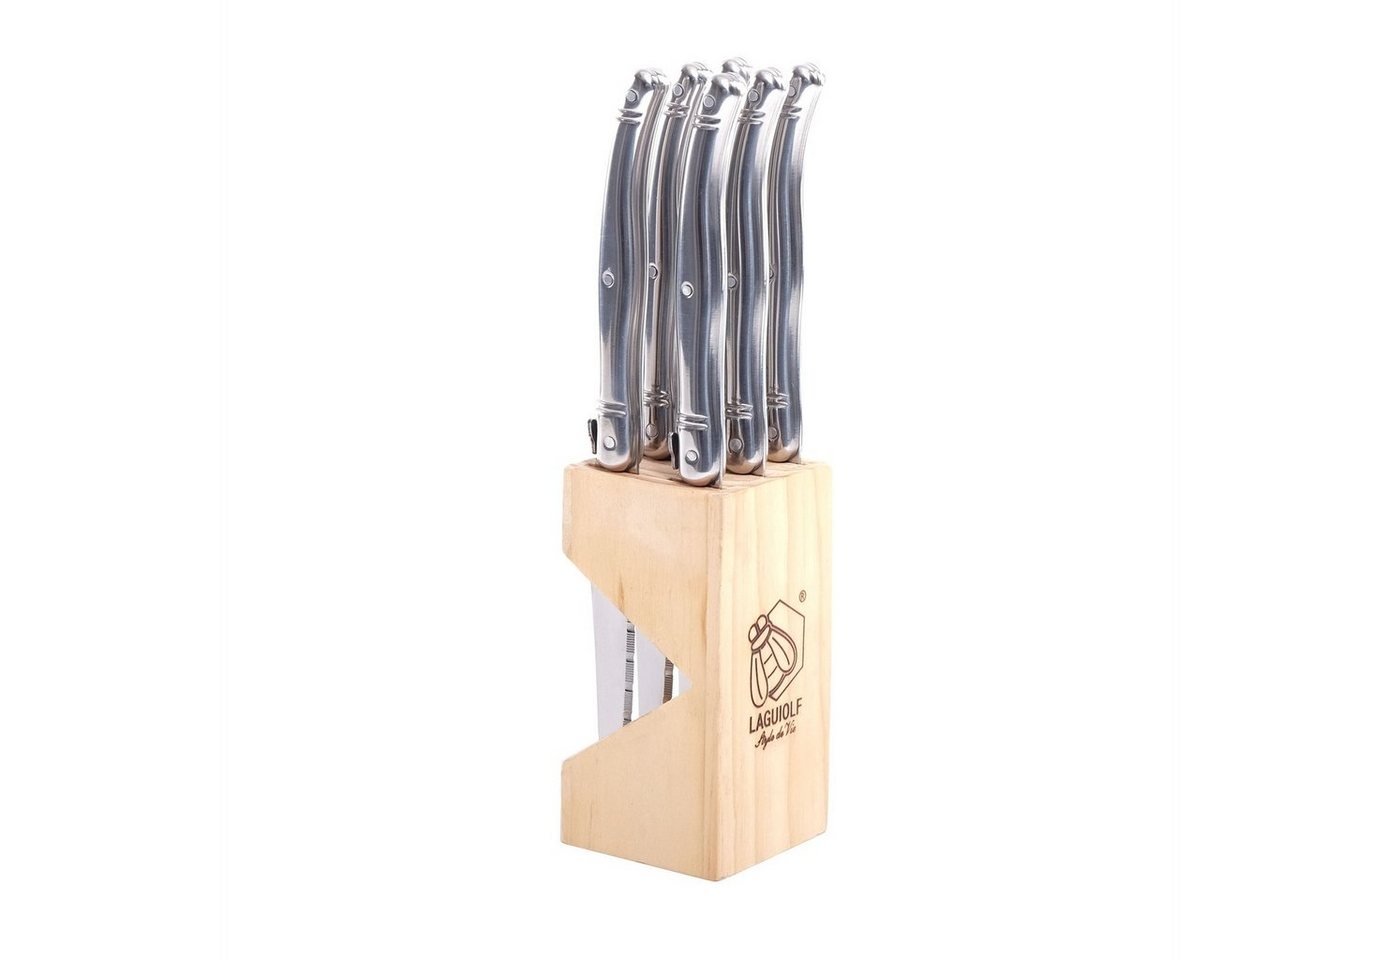 DESIGN DELIGHTS Steakmesser Steakmesser-Set im Block SUCCESSO", Edelstahl, silberfarben,6 Messer" von DESIGN DELIGHTS